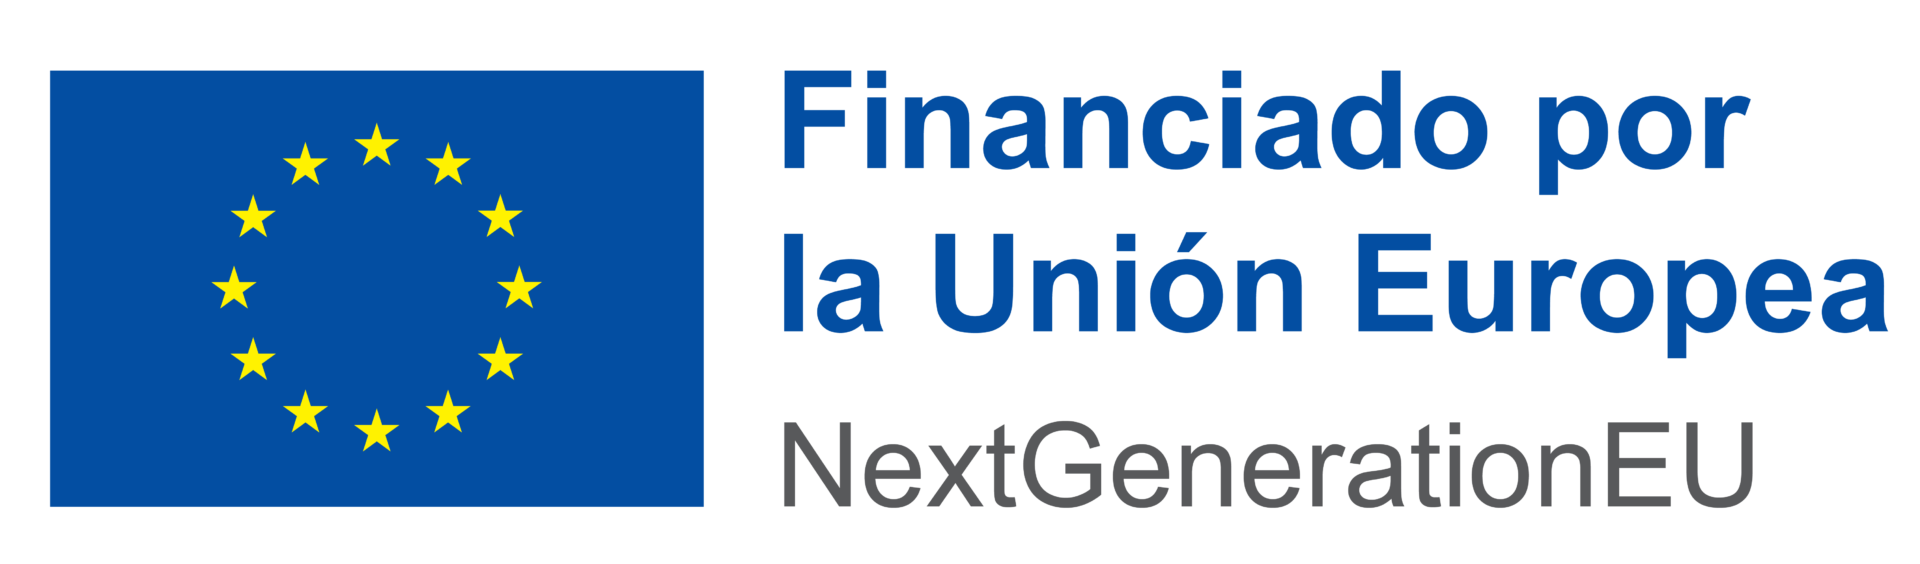 Logo Financiado por la Unión Europea - Next Generation